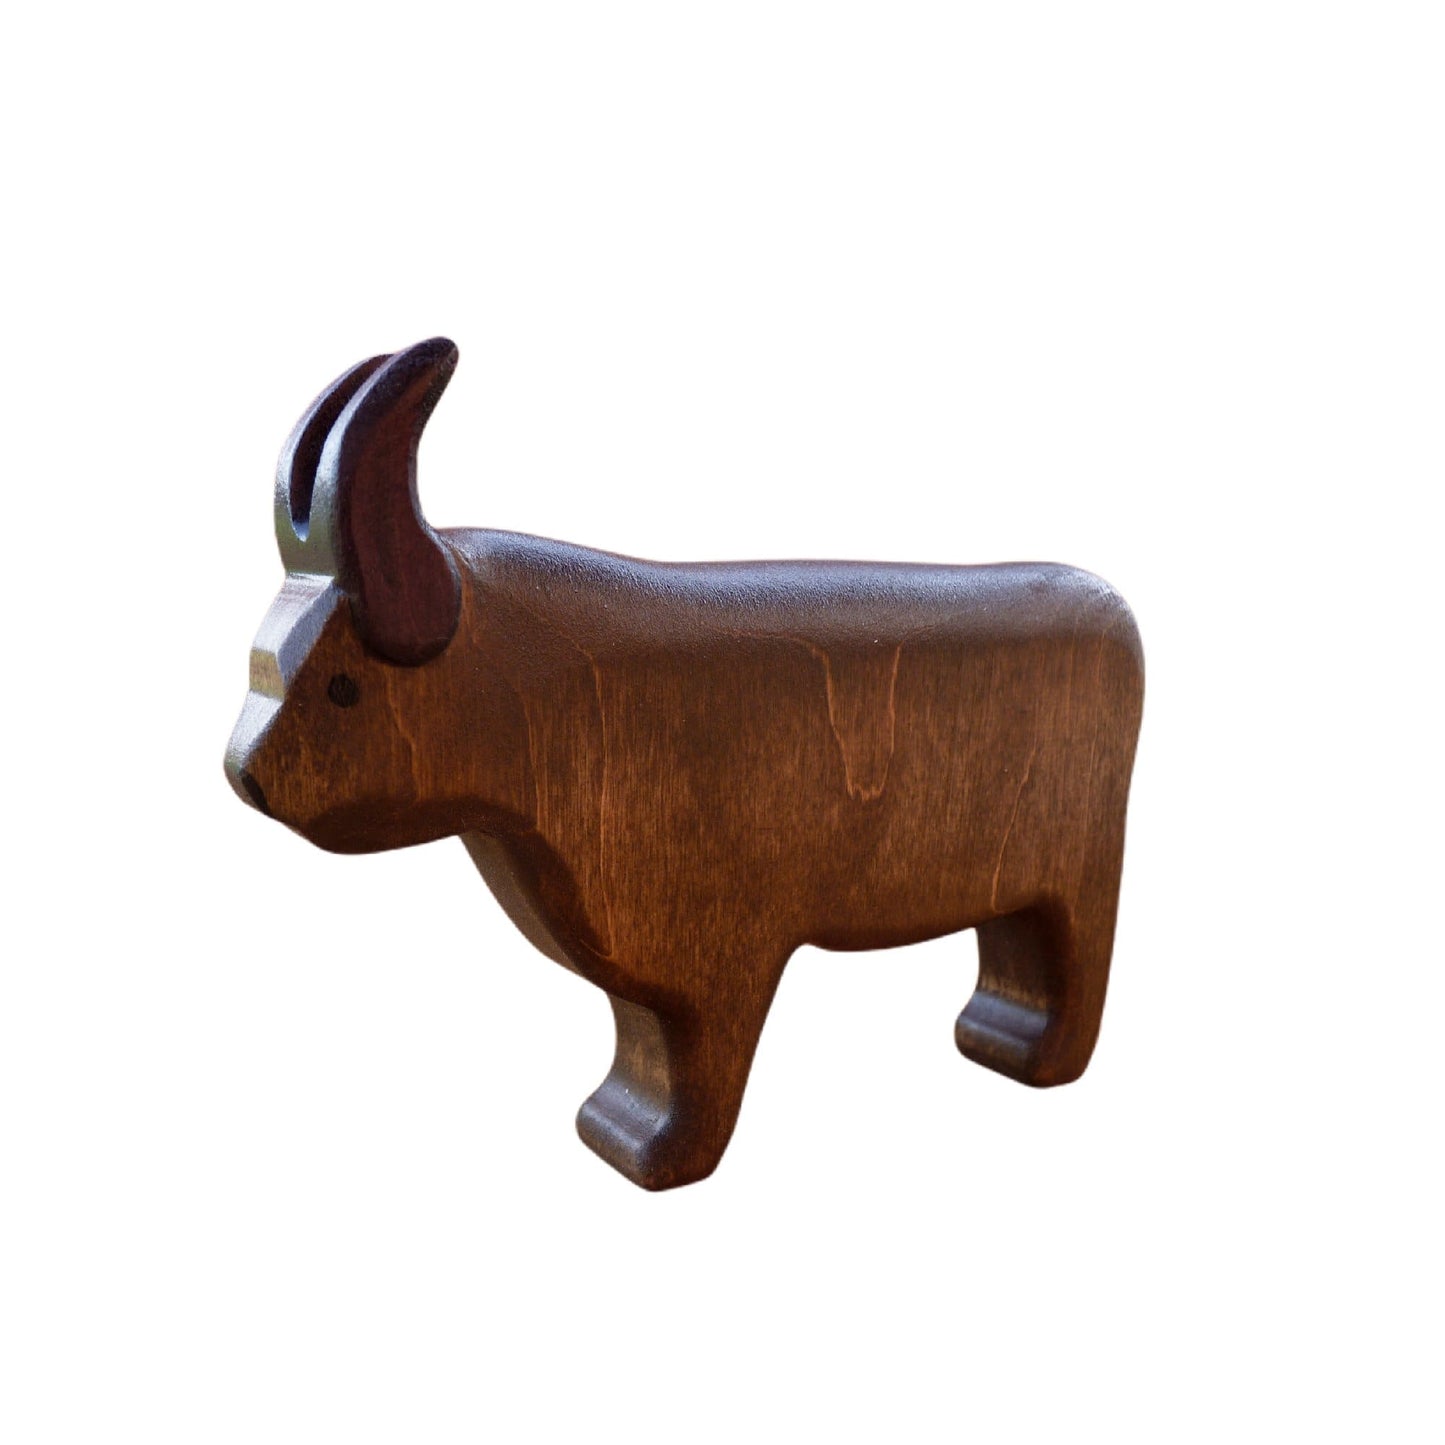 Wooden Bull